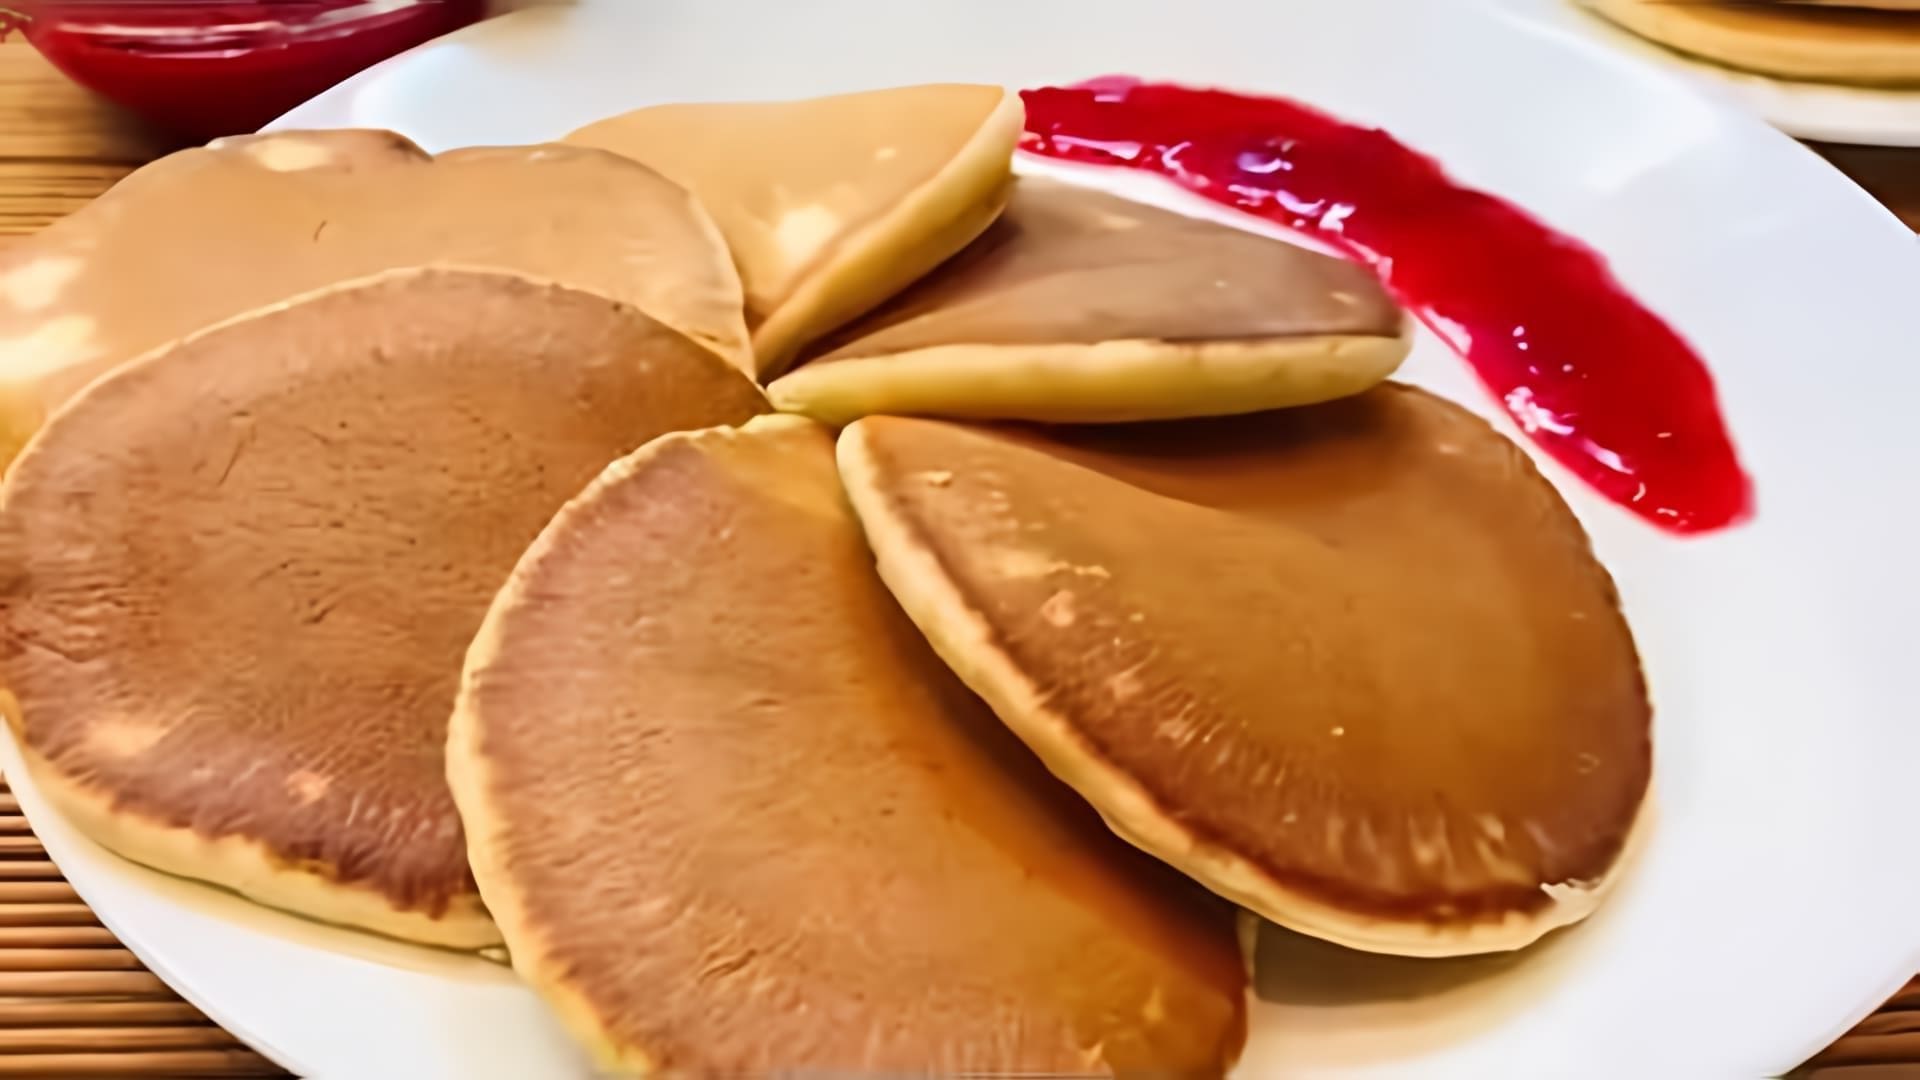 Видео рецепт для блинов, которые являются популярным американским завтраком